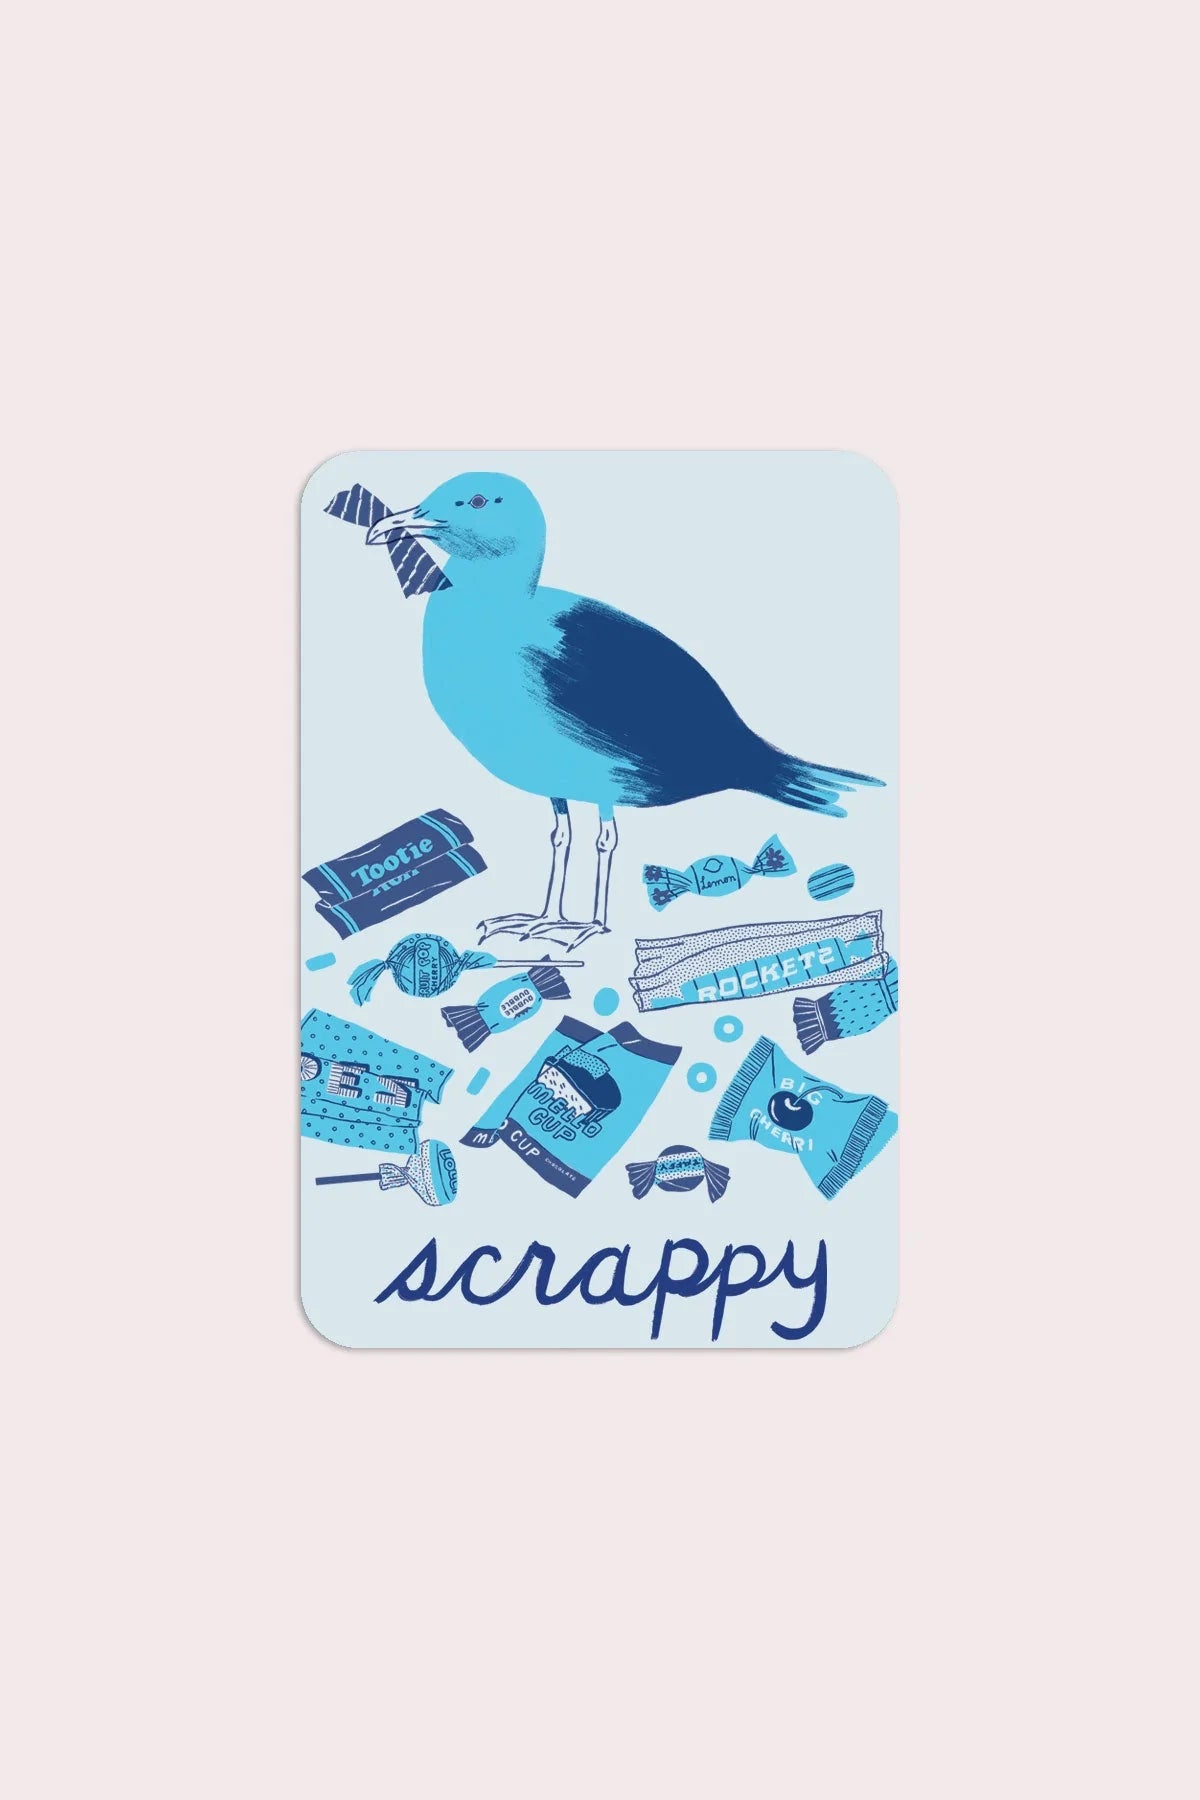 Scrappy Seagull Vinyl Sticker - Proper